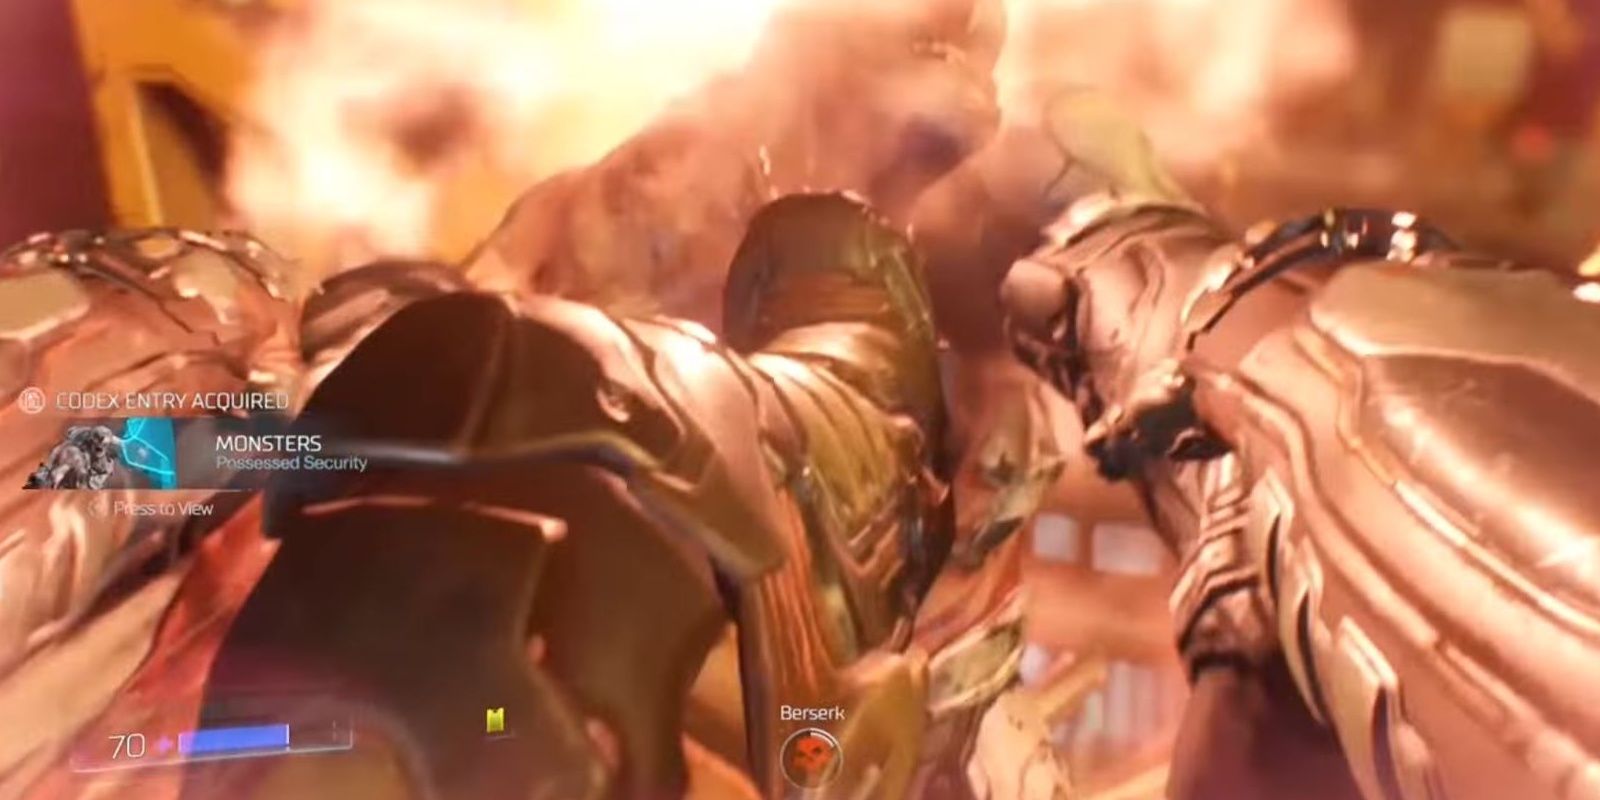 Berserk Doom Slayer kills a demon in Doom 2016